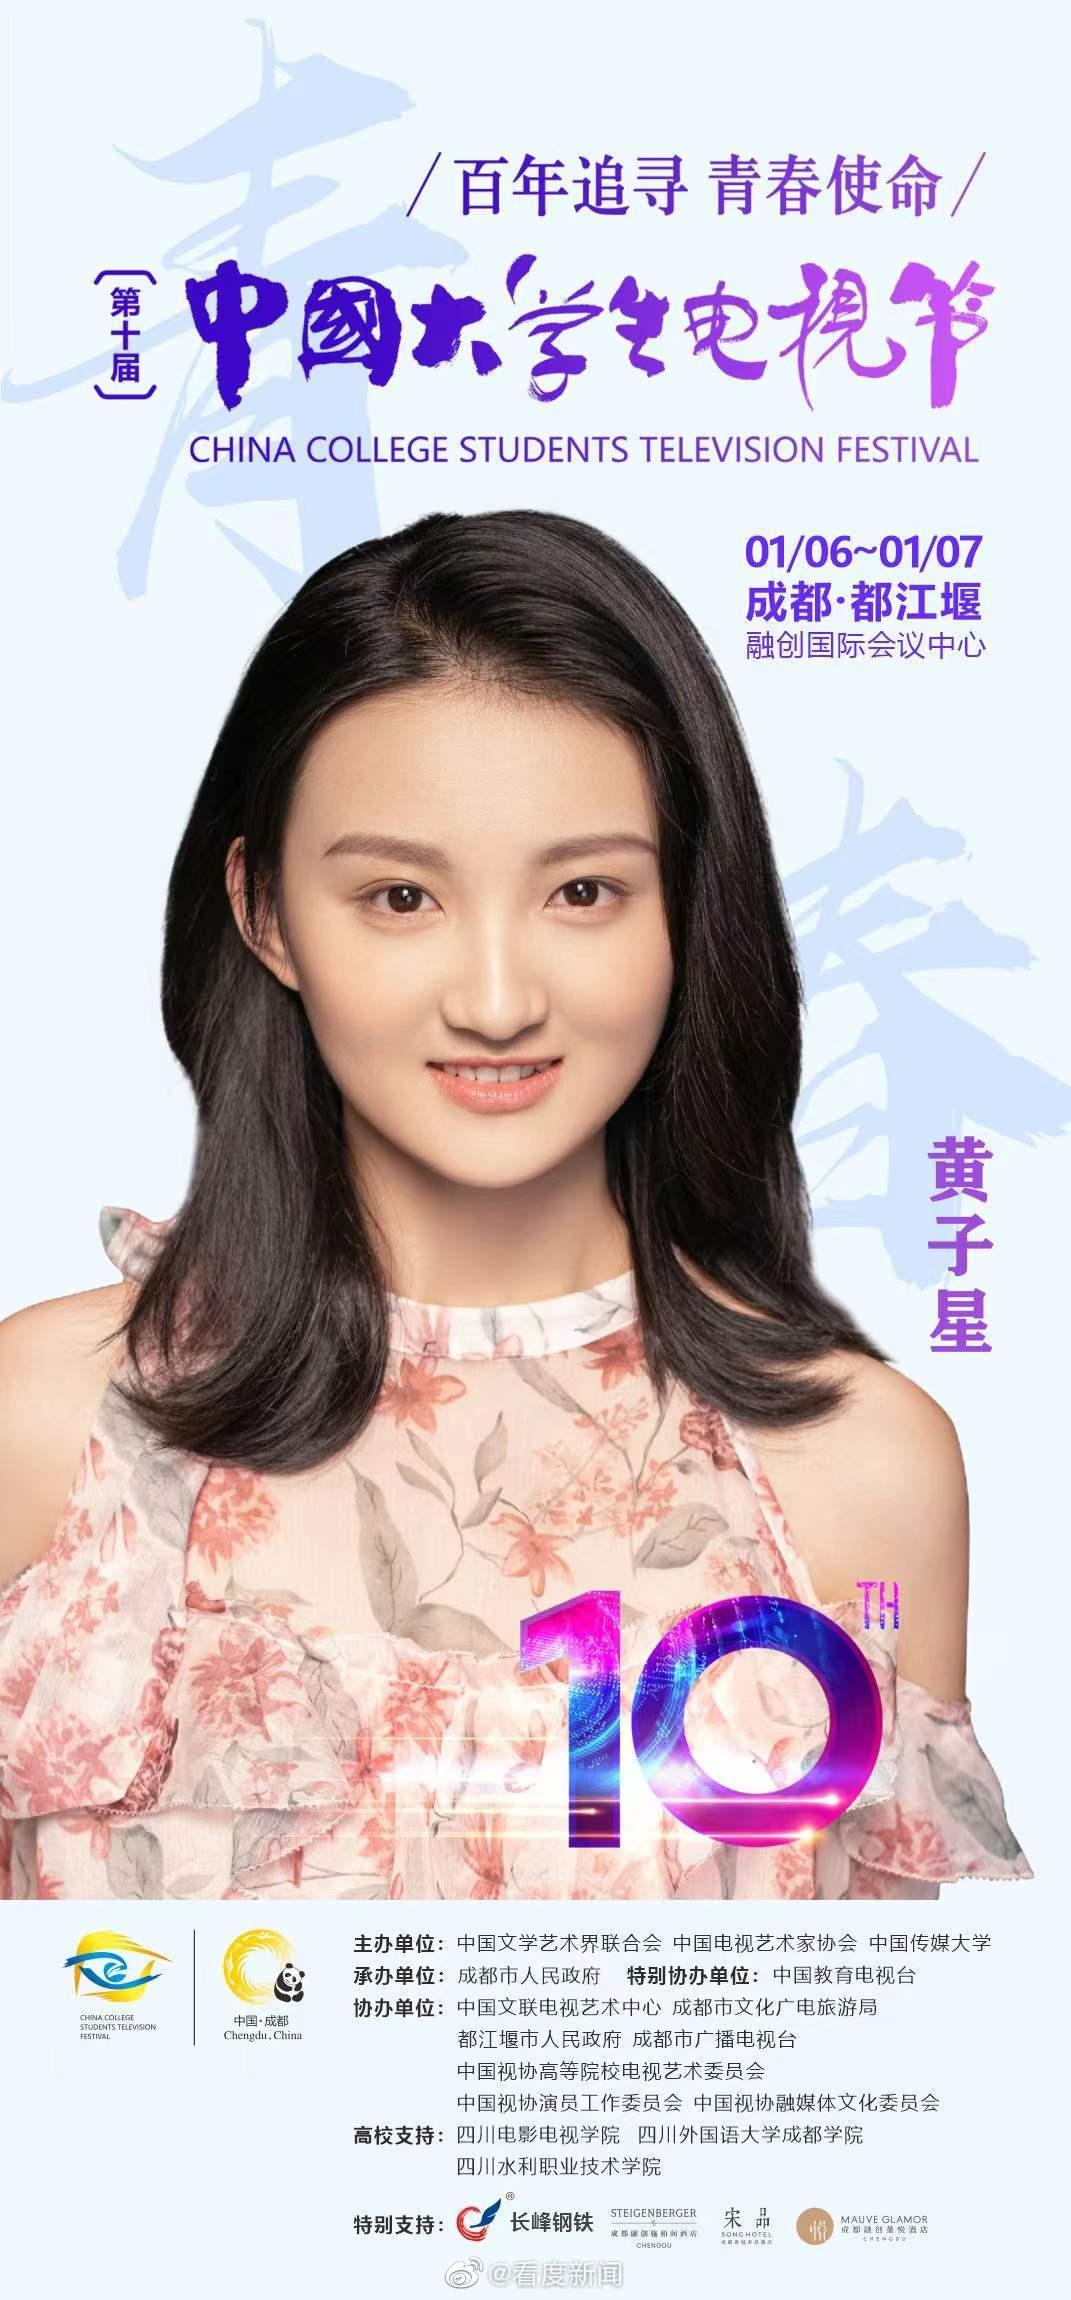 超强阵容助力 第十届中国大学生电视节绽放青春华彩